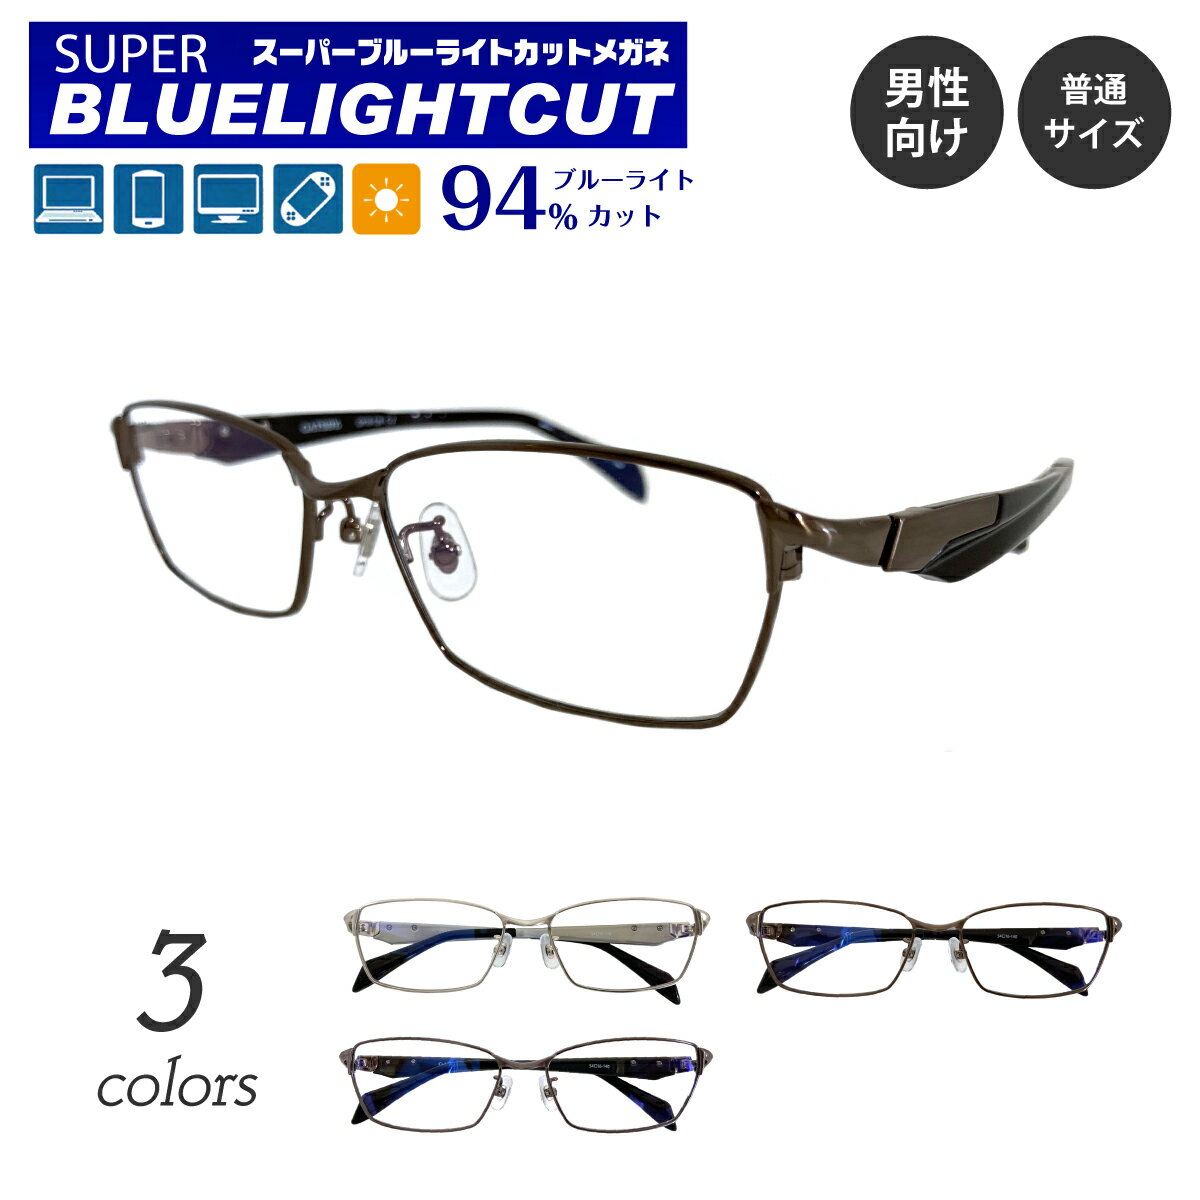 度なし 伊達メガネ スーパーブルーライトカット 94% ブルーライトカットメガネ ちょいワル メタル フレーム スクエア ウルテム使用 だて 眼鏡 めがね メンズ 男性 おしゃれ かっこいい ちょい悪 ごっつい ごつい いかつい 厳つい